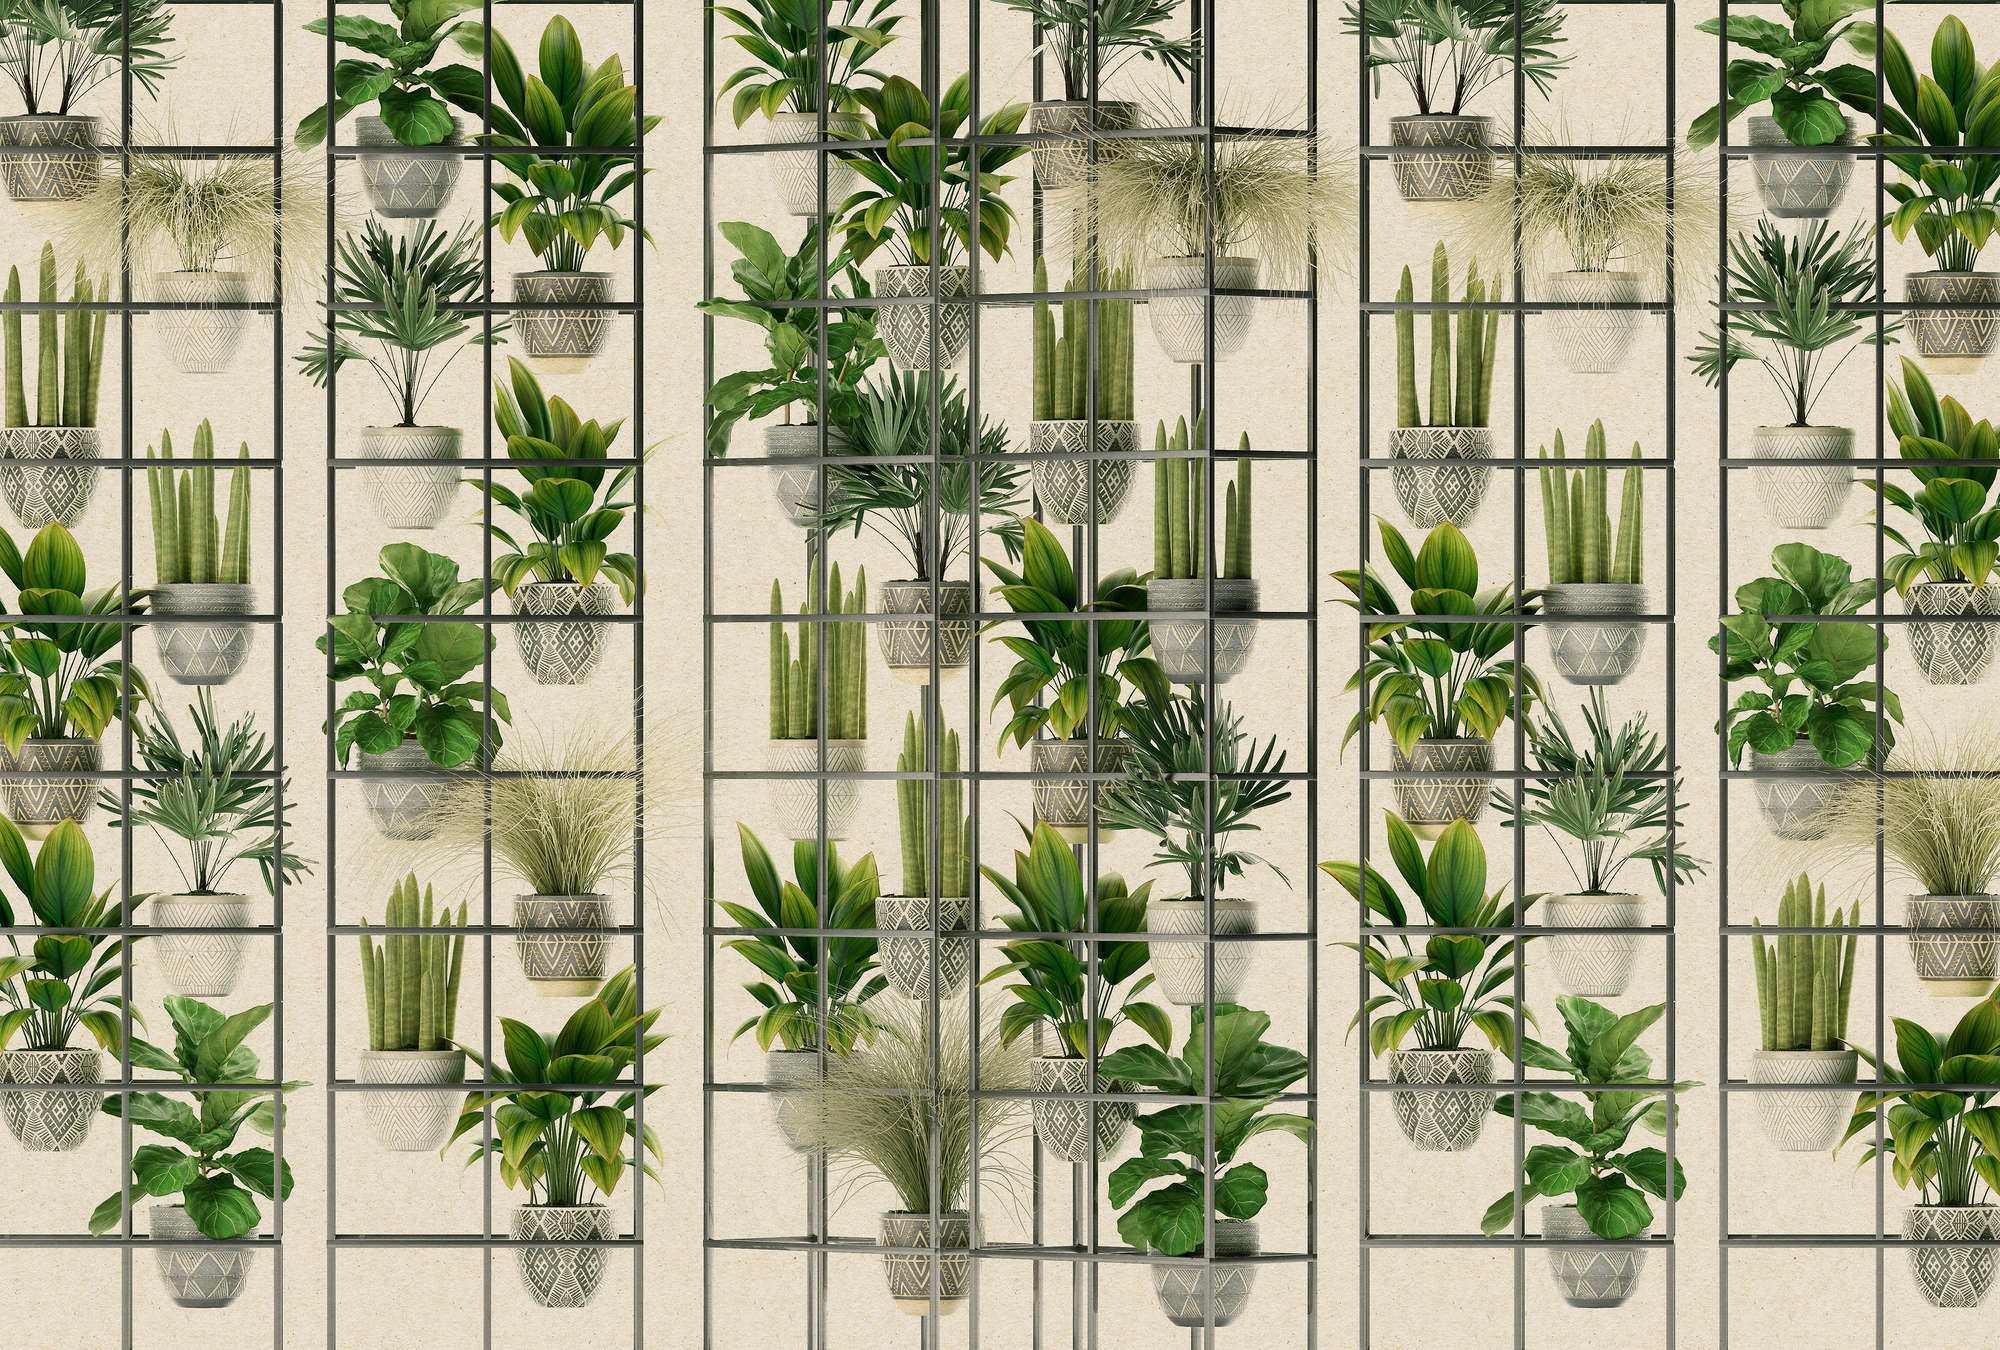             Plant Shop 2 - Mural moderno de plantas en verde y gris
        